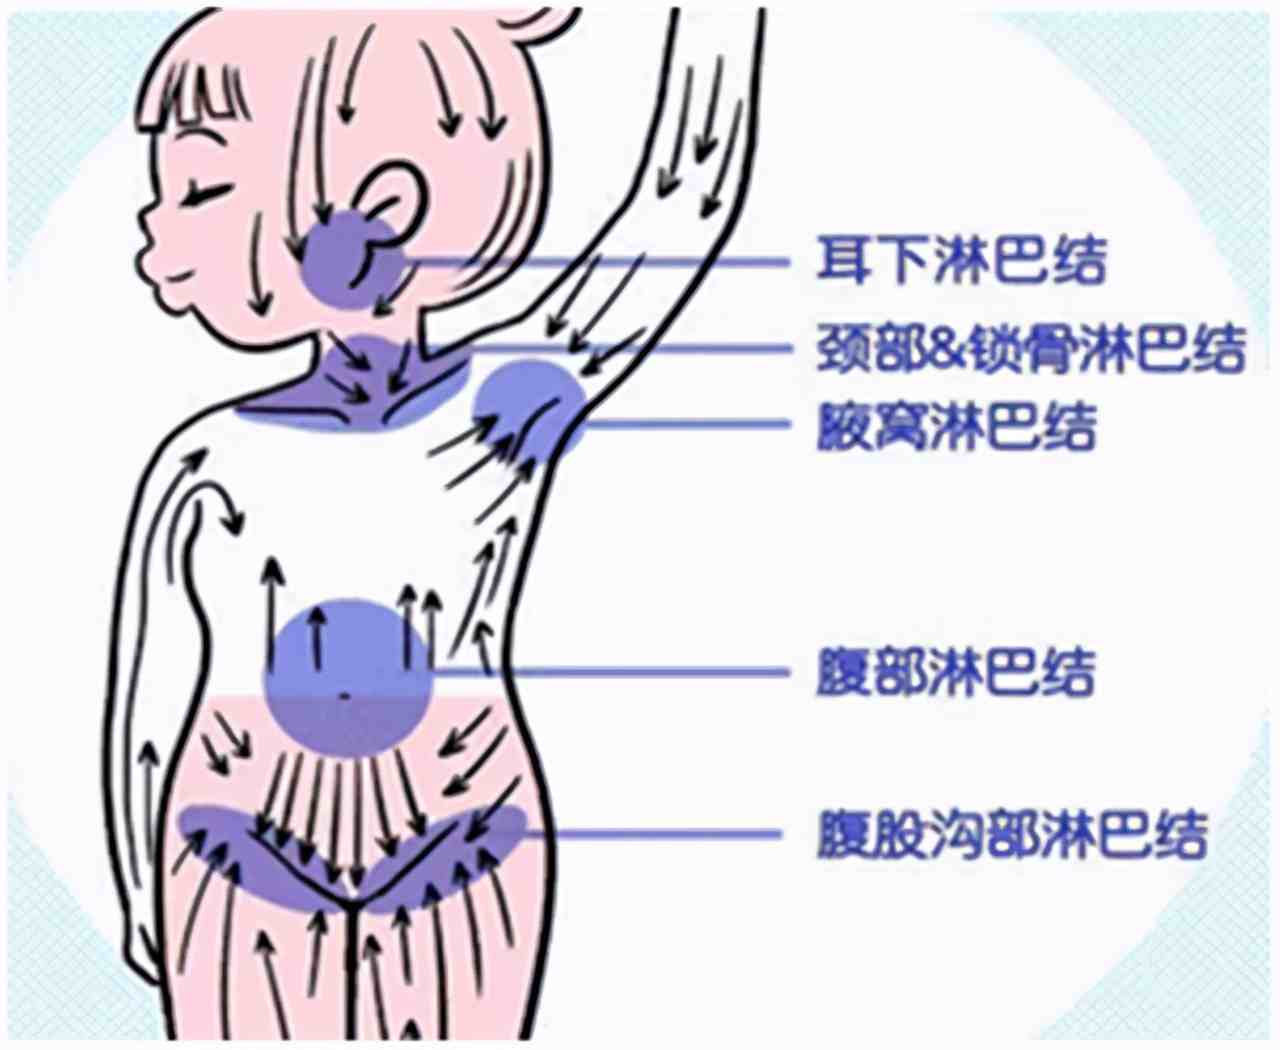 淋巴结节位置图片